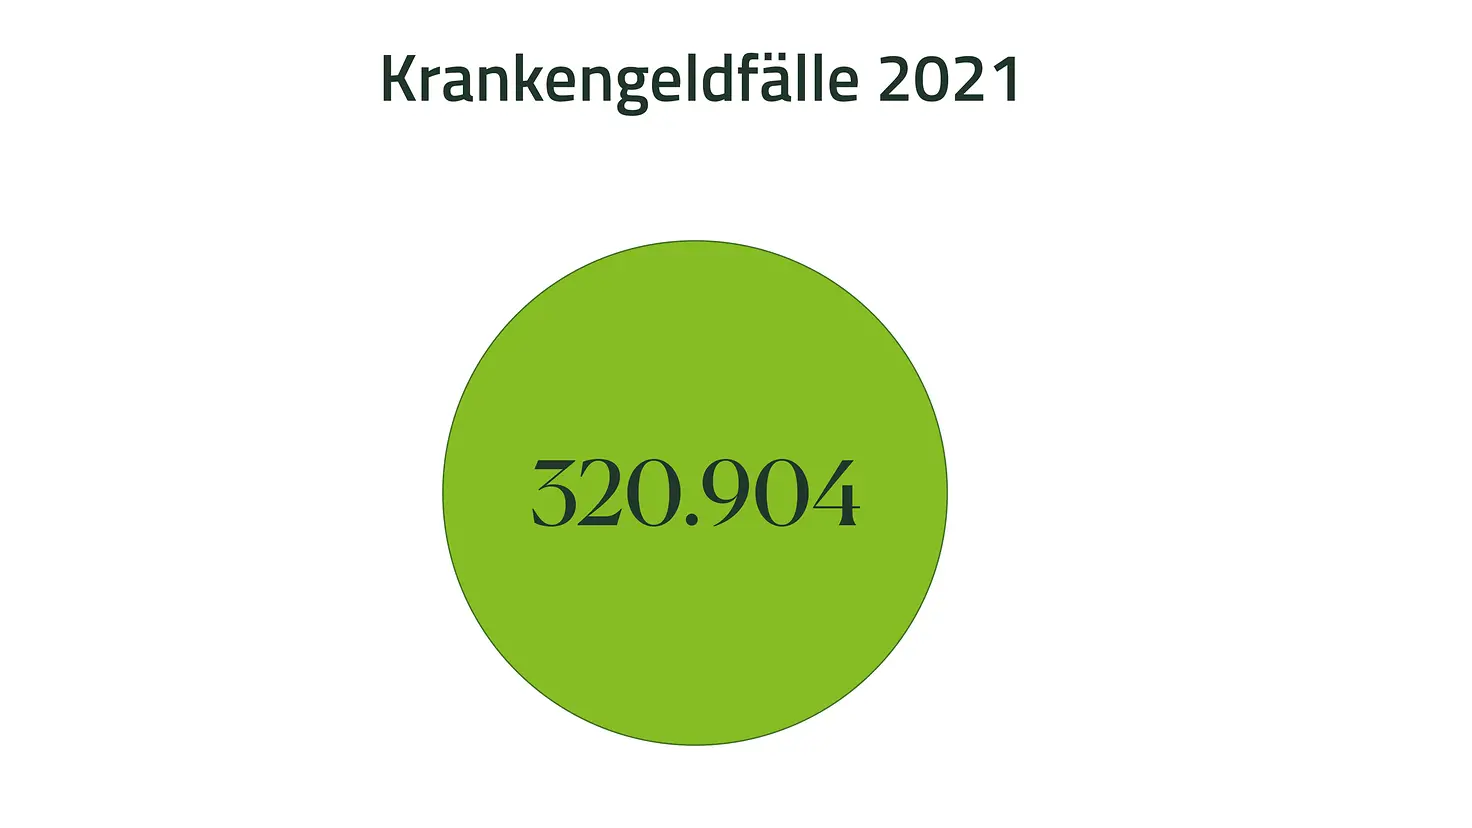 Grafik mit der Zahl 320.904 für Krankengeldfälle 2021